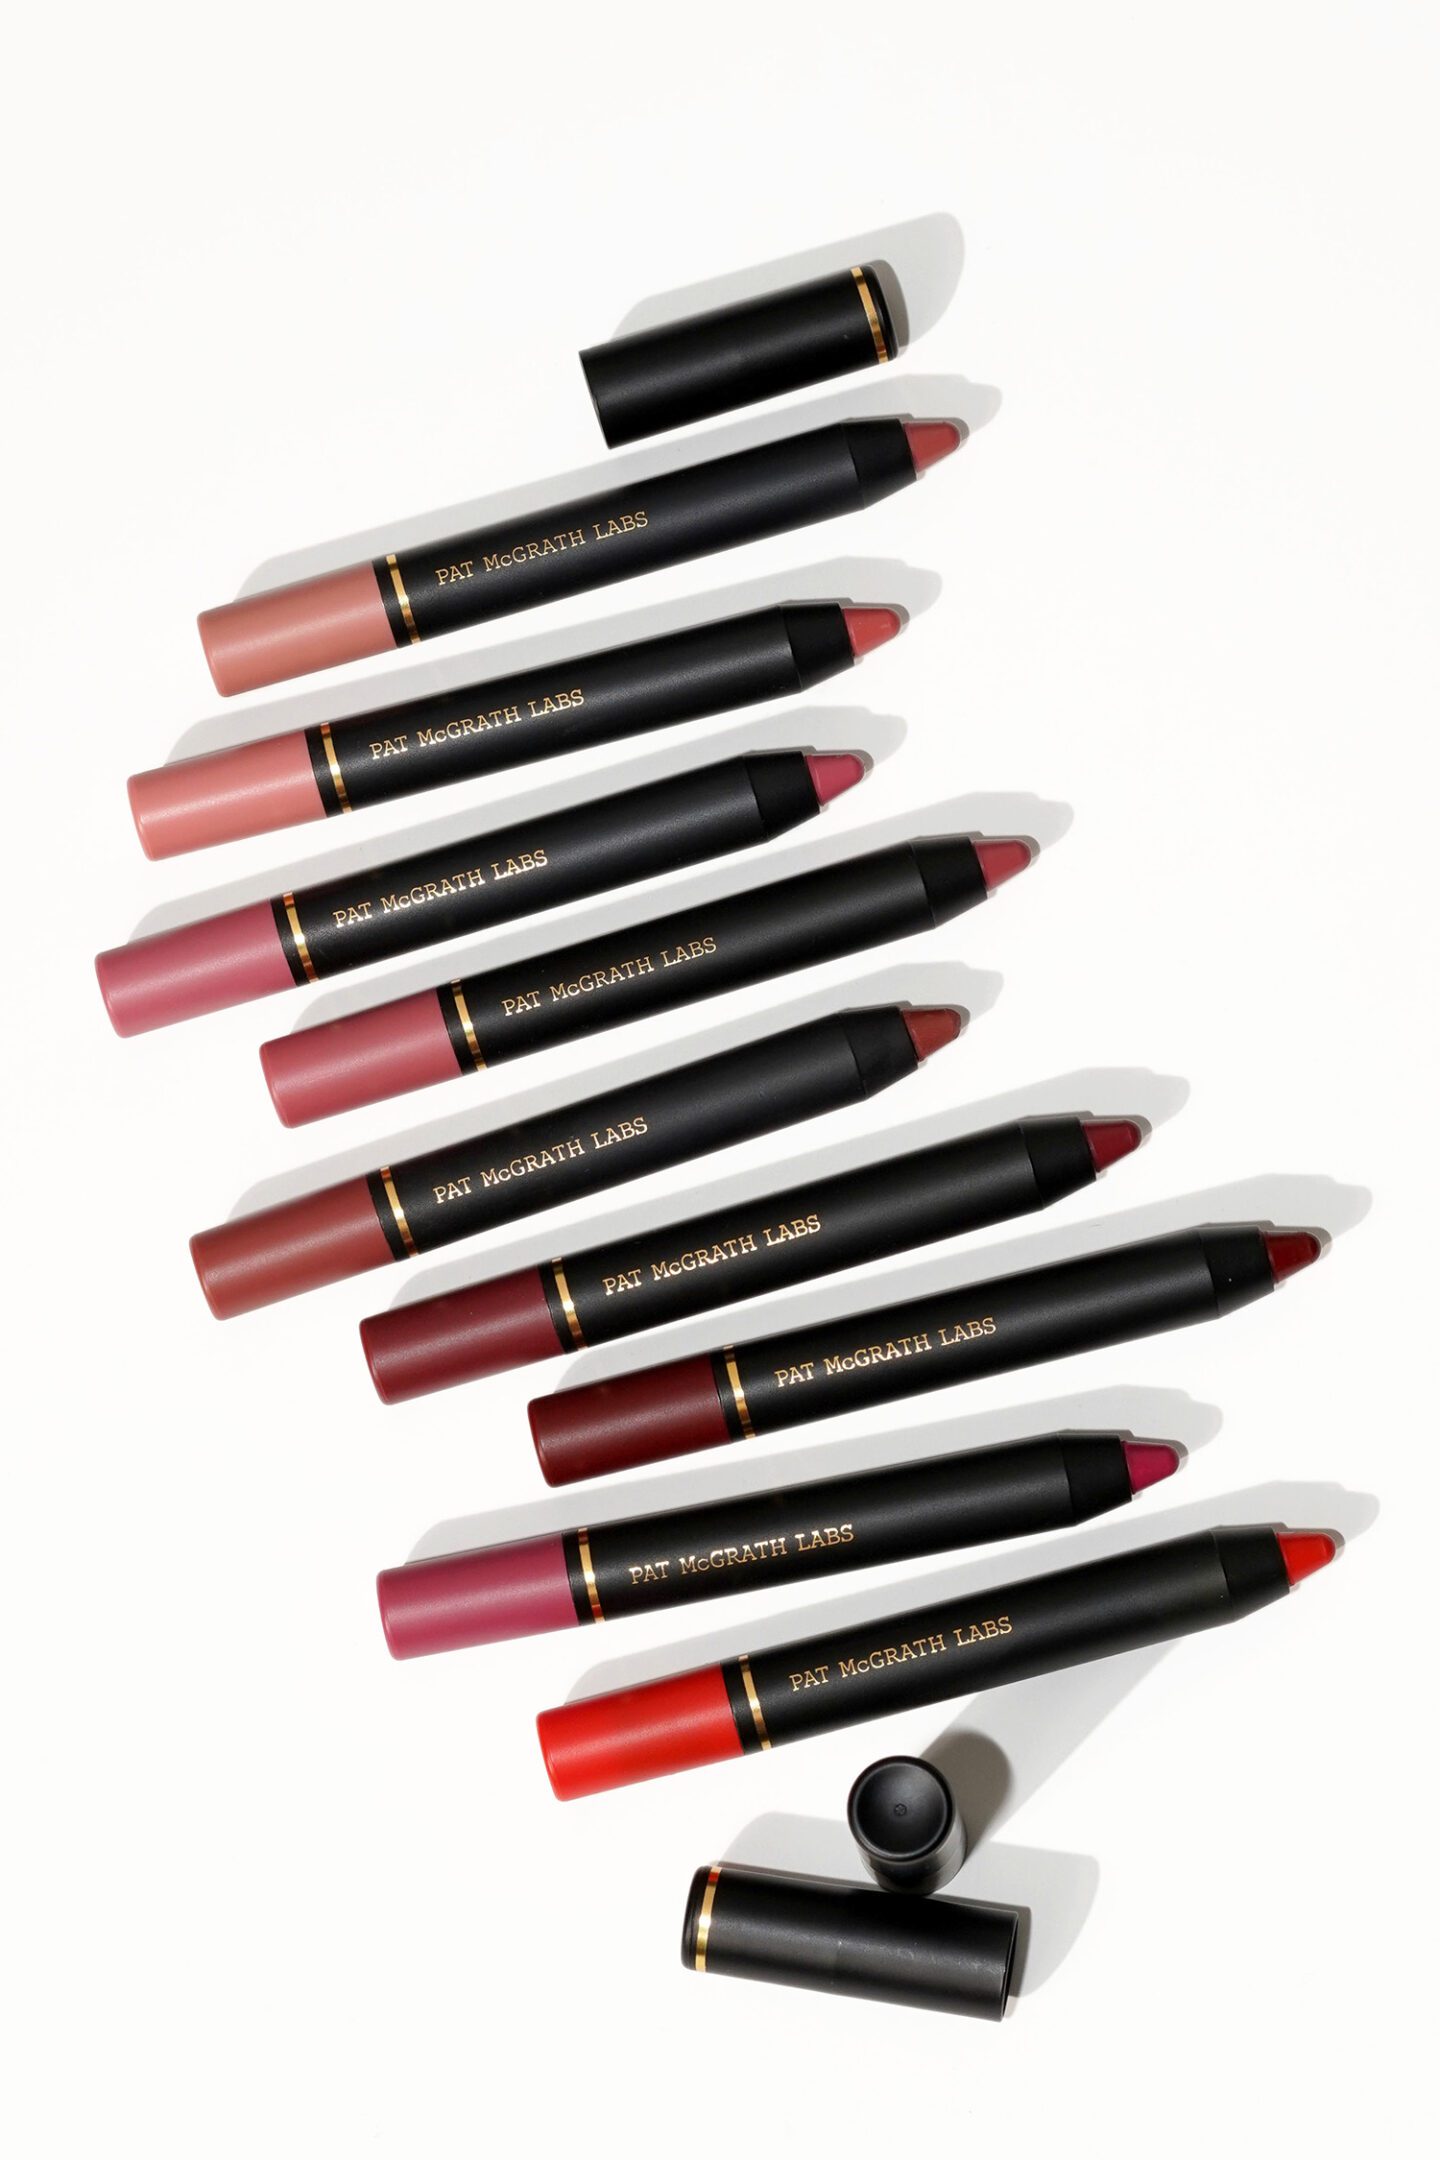 Pat McGrath Dramatique Mega Lip Pencil review via The Beauty Lookbook